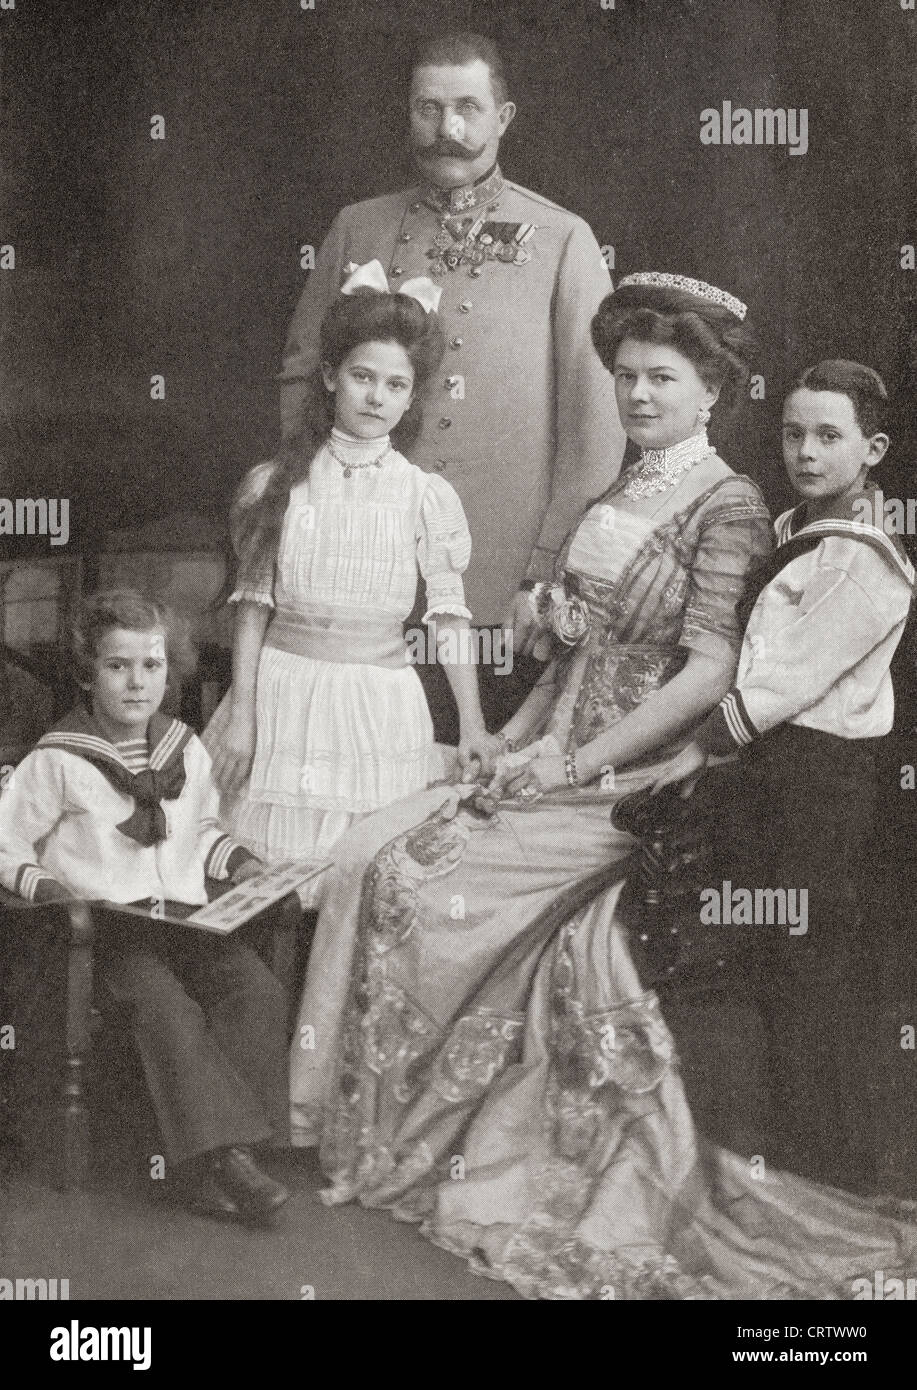 Franz Ferdinand, 1863 - 1914. Archiduc d'Autriche-Este, austro-hongrois et Prince Royal de Hongrie et de Bohême, en famille Banque D'Images